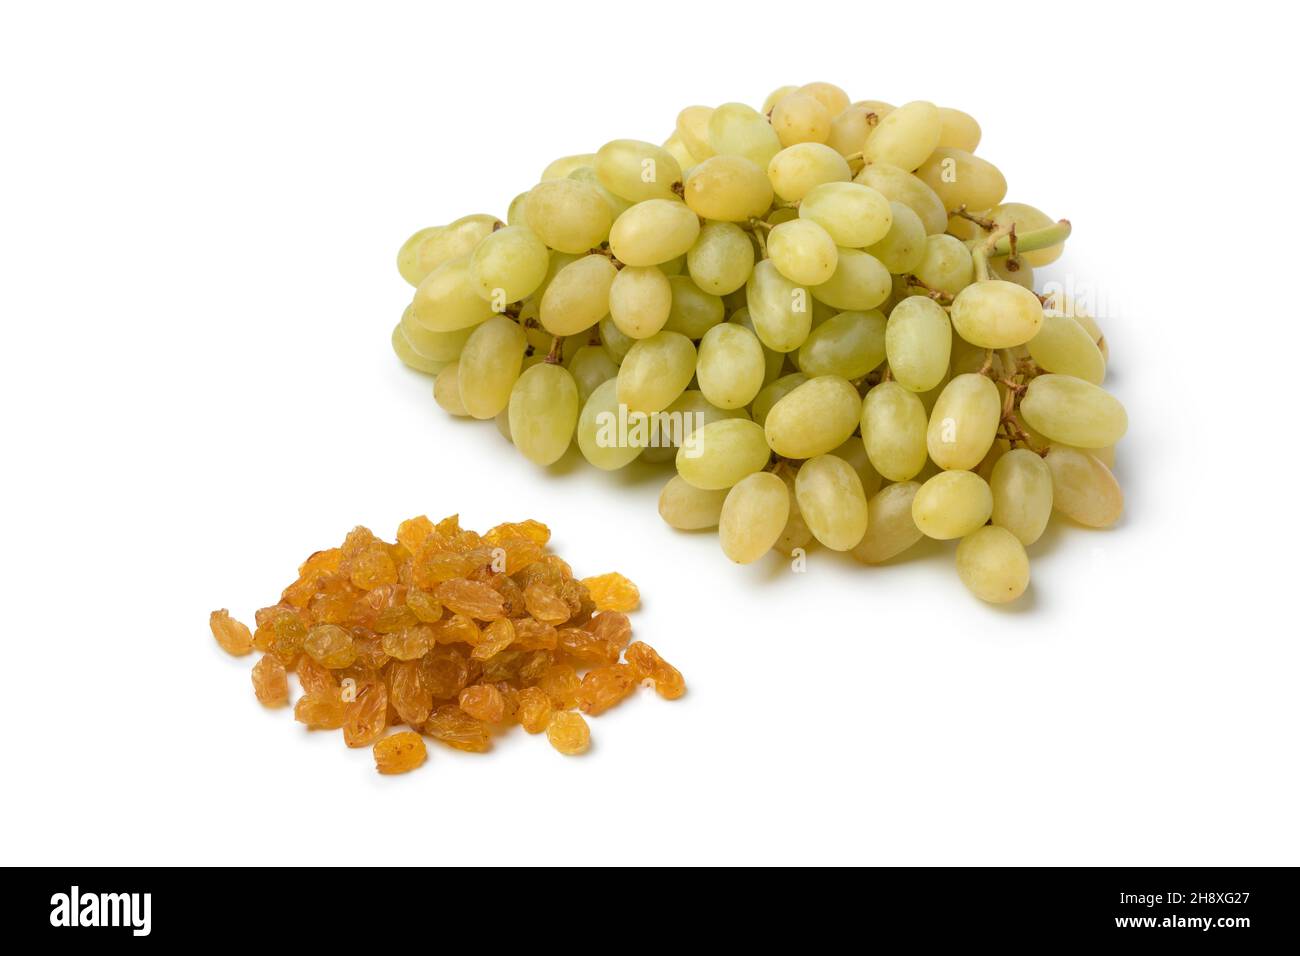 Mazzo di uve sultana turche mature fresche e uvetta secca isolate su sfondo bianco Foto Stock